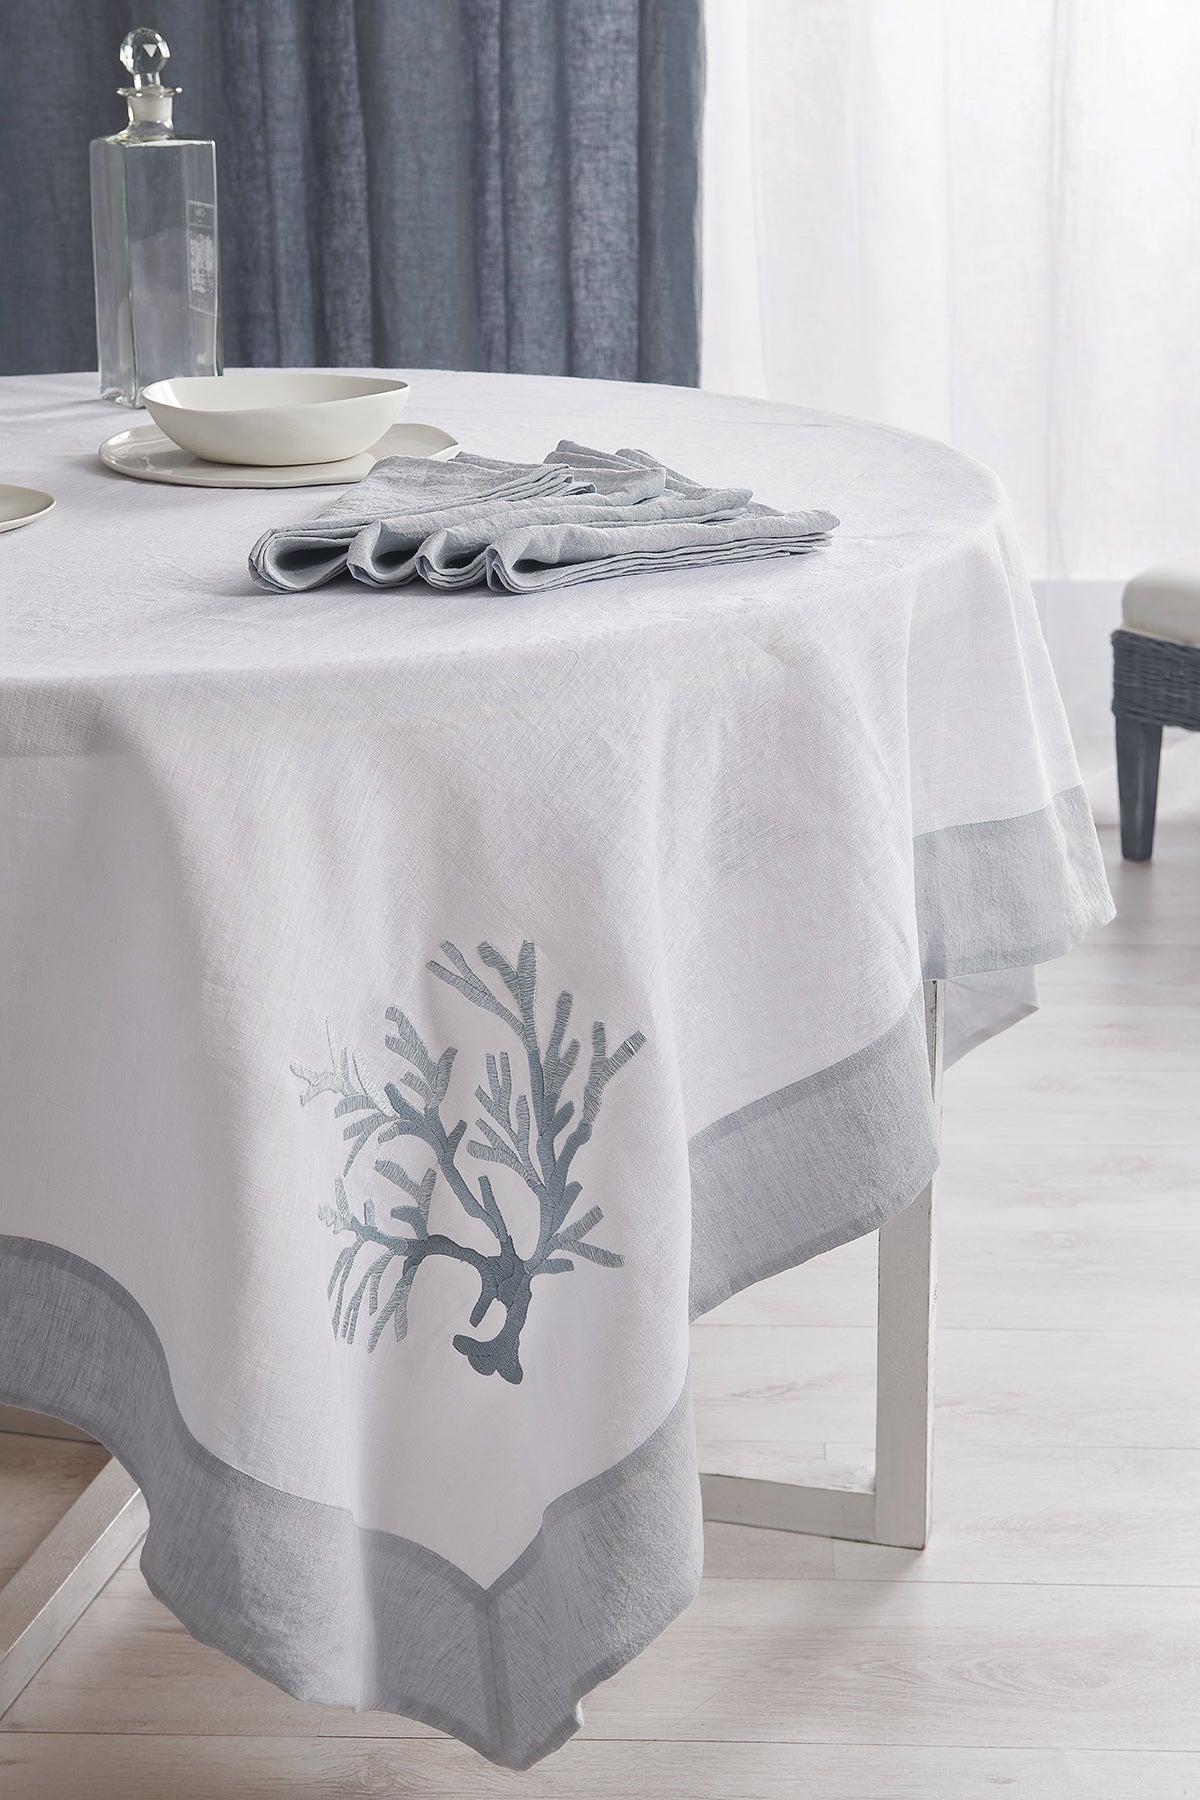 Tablecloth Corallomania Table linens lino